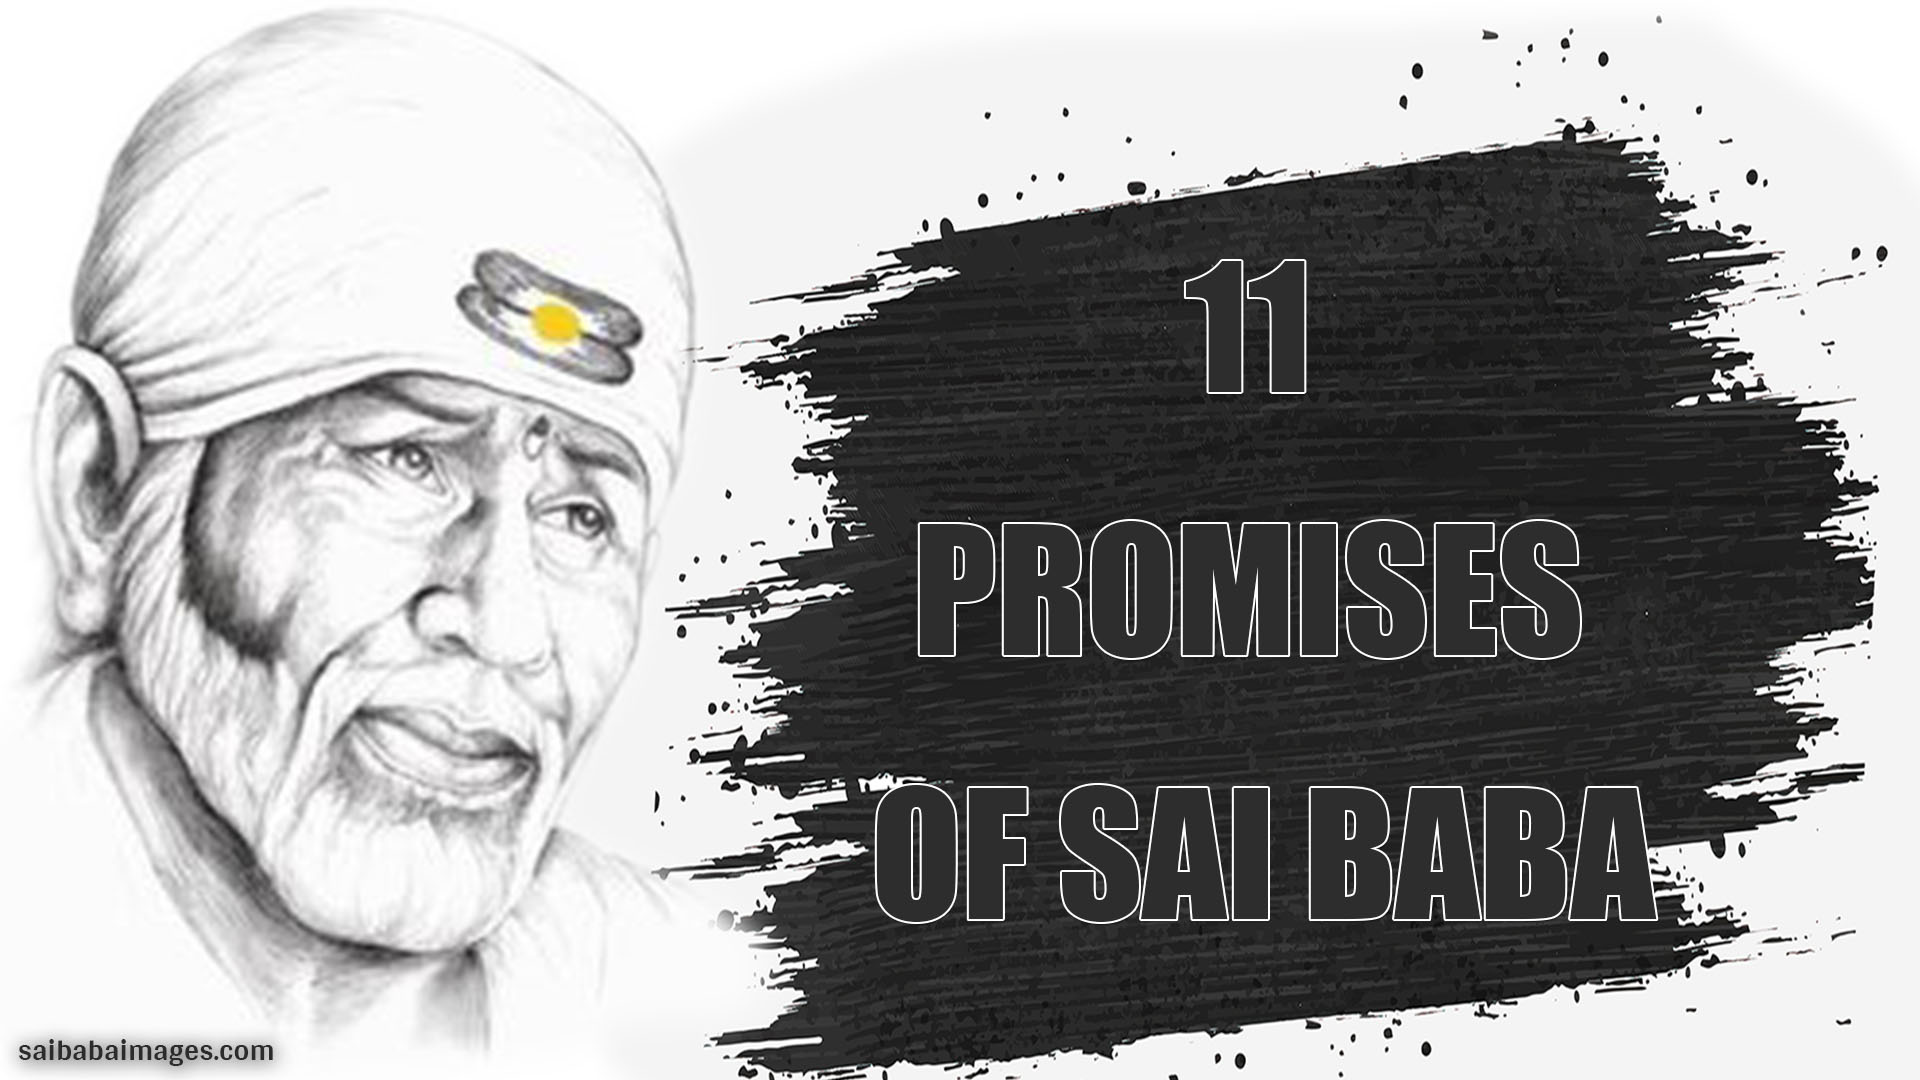 11 Promises of Sai Baba in Marathi and English